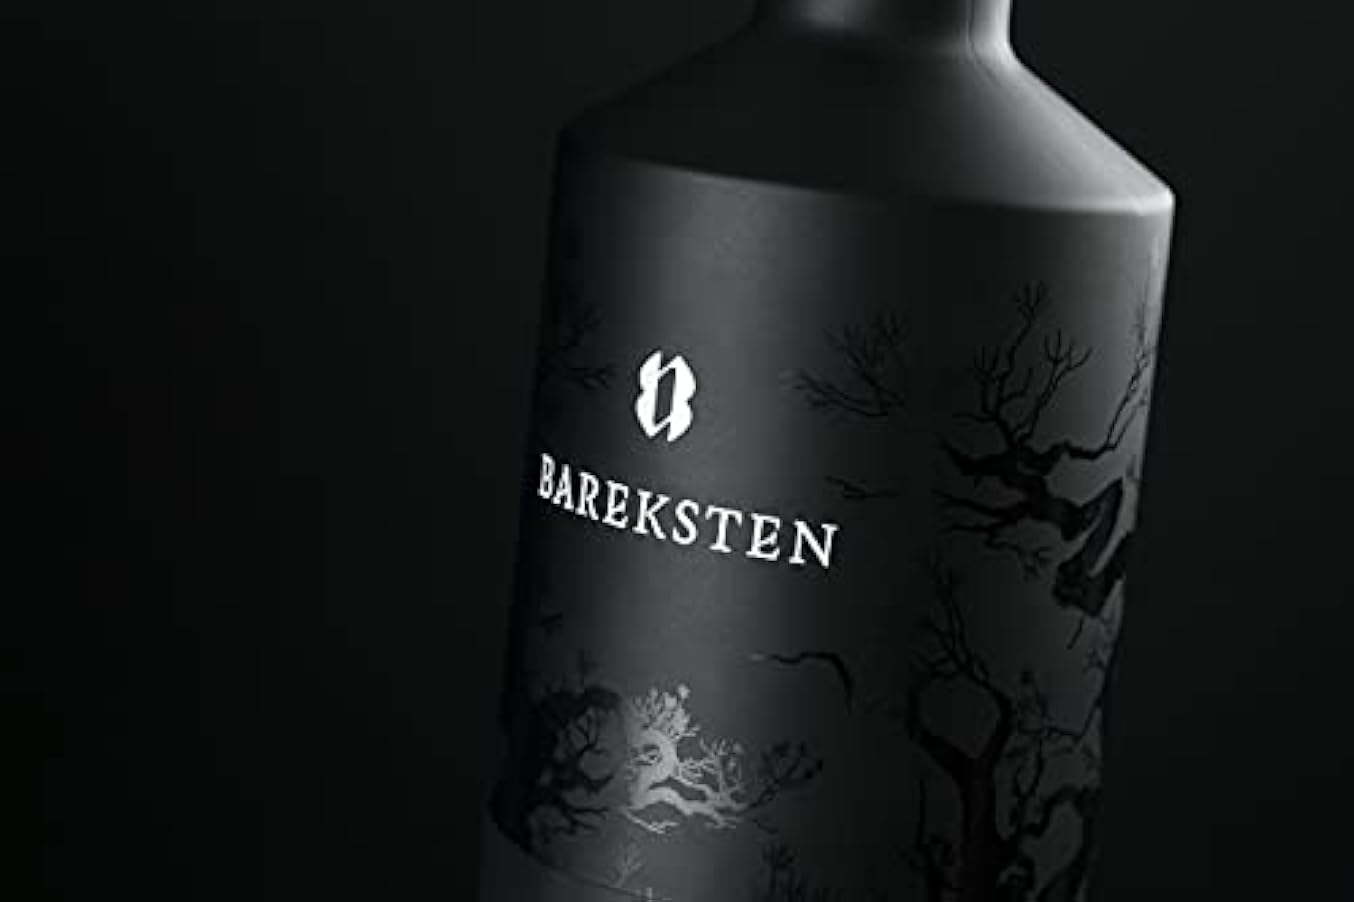 Bareksten Bareksten - Botanical Gin - 500 ml 226361054